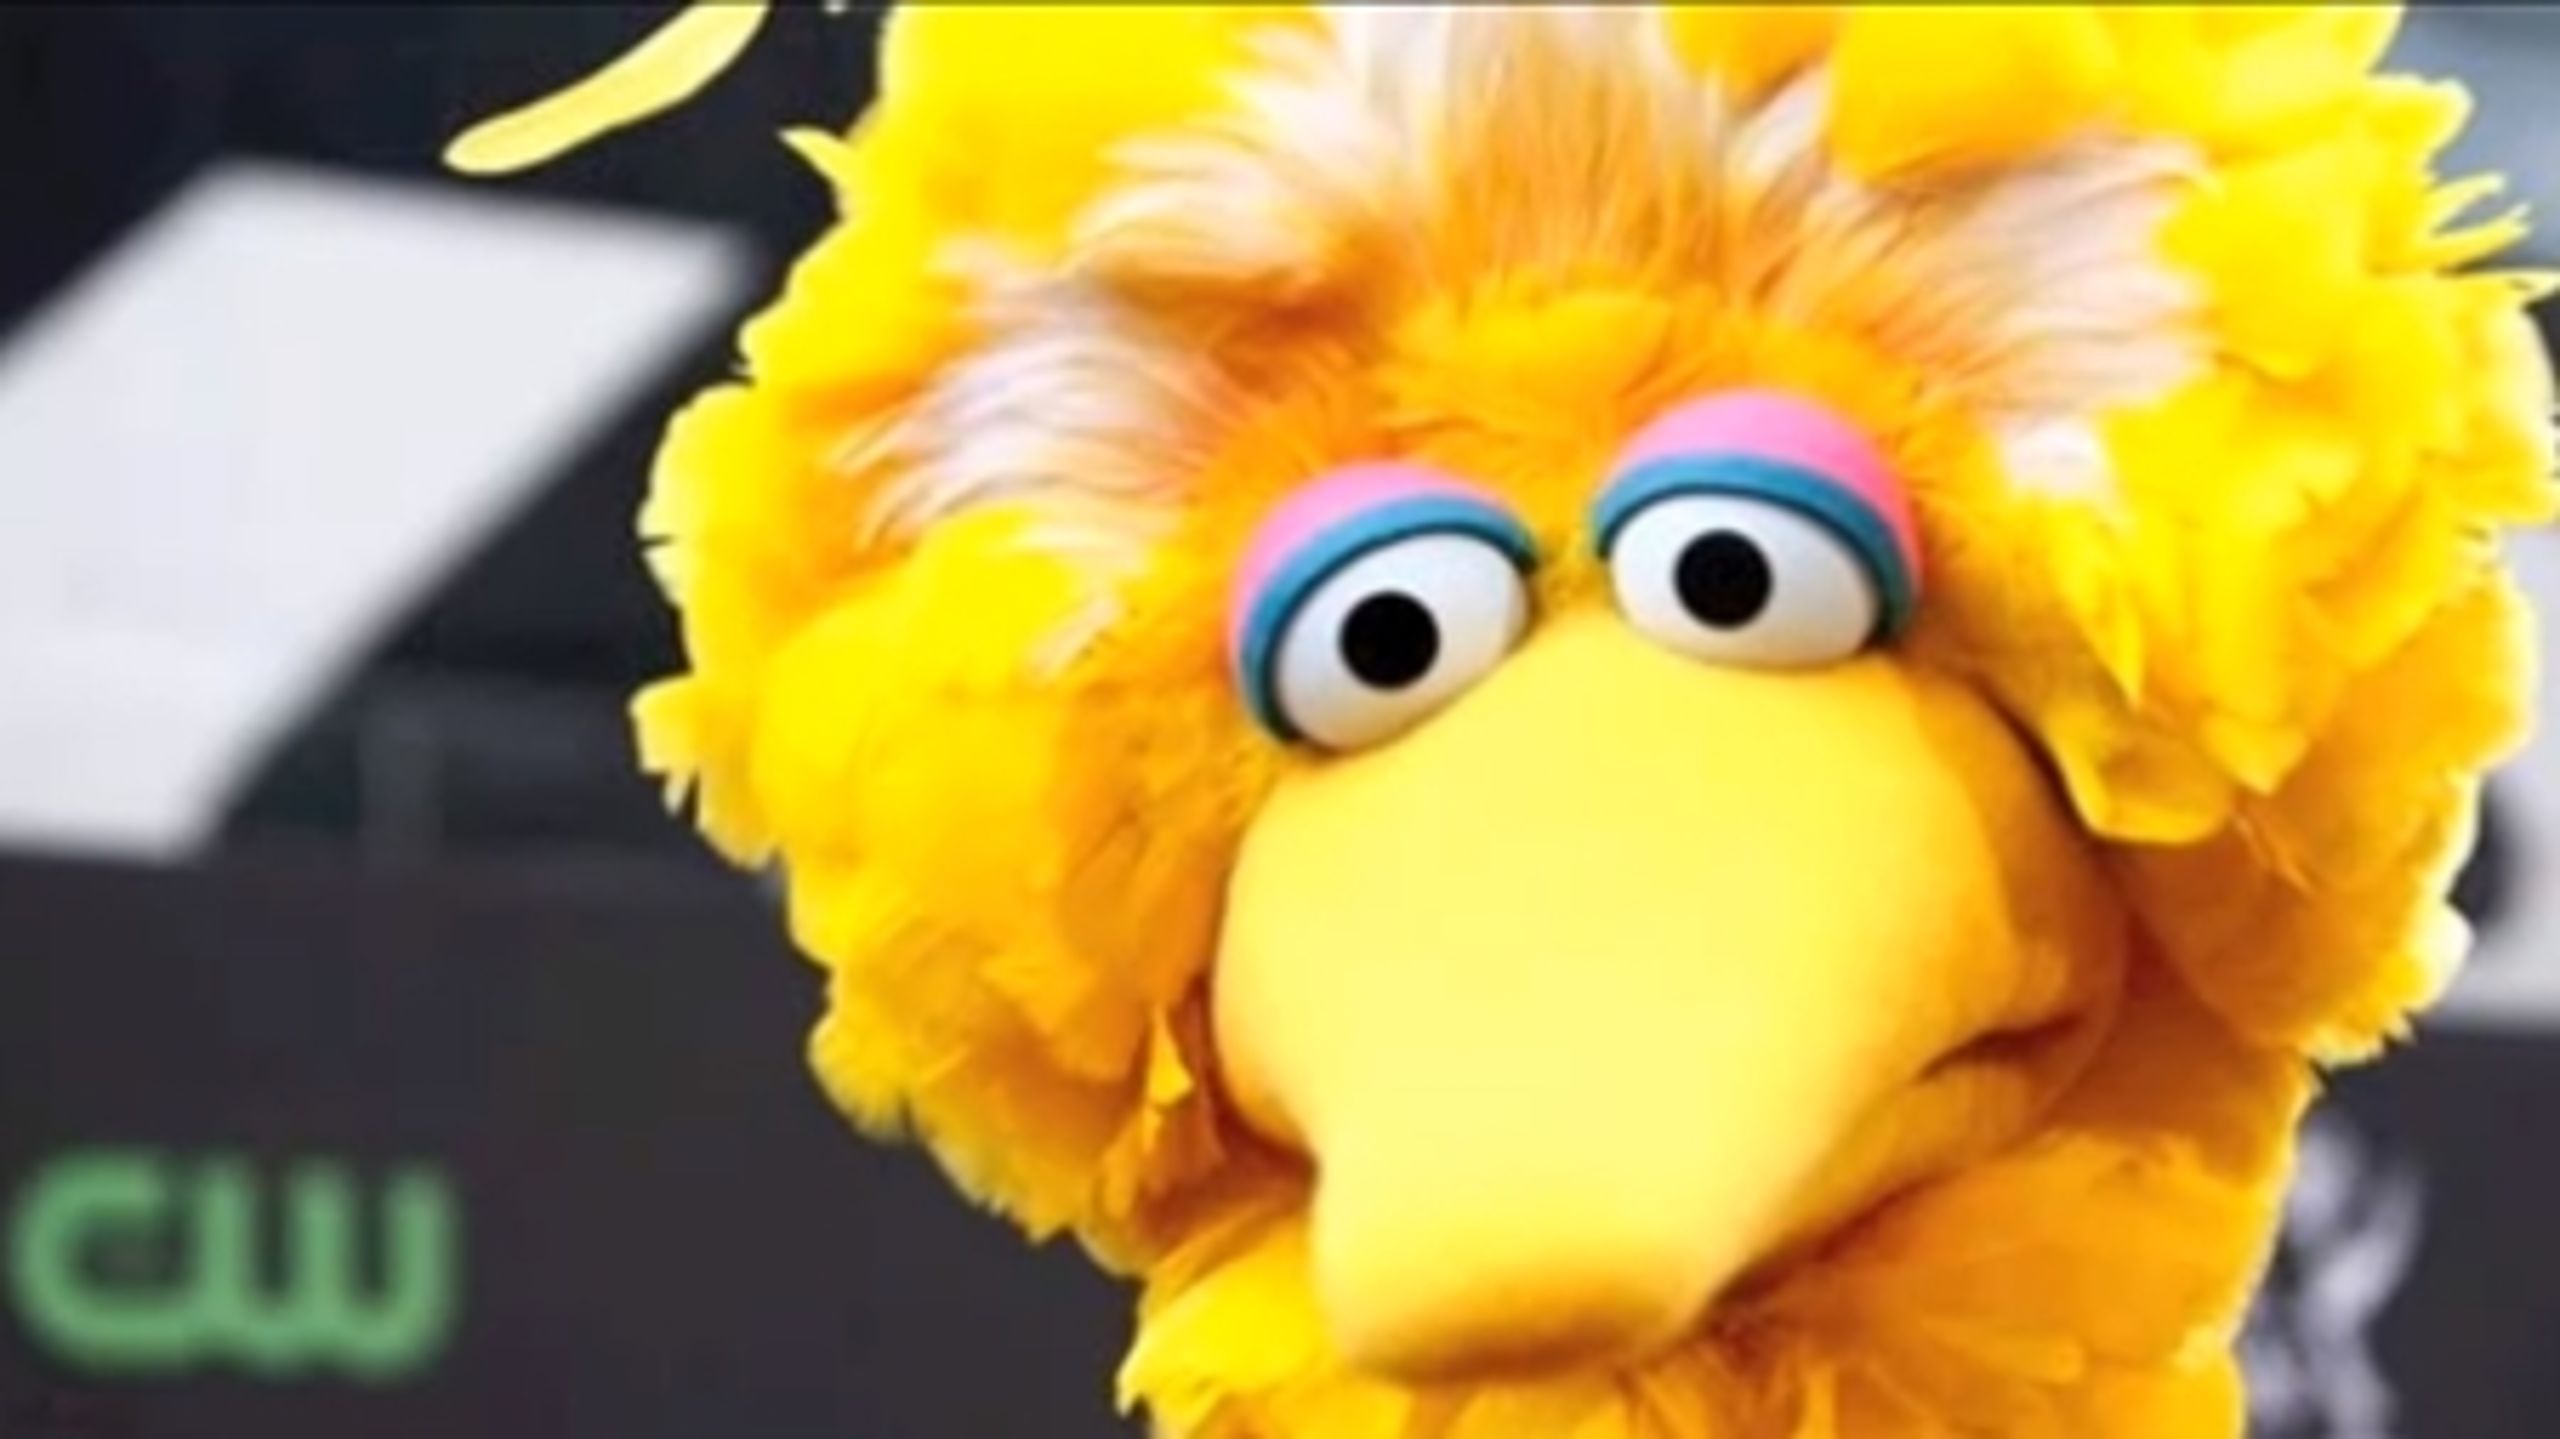 Big Bird fra ’Sesame Street’ blev i denne uge ufrivilligt blandet ind i valgkampen, efter at Mitt Romney
under sidste uges tv-debat proklamerede, at han ville fjerne den offentlige støtte til programmet.